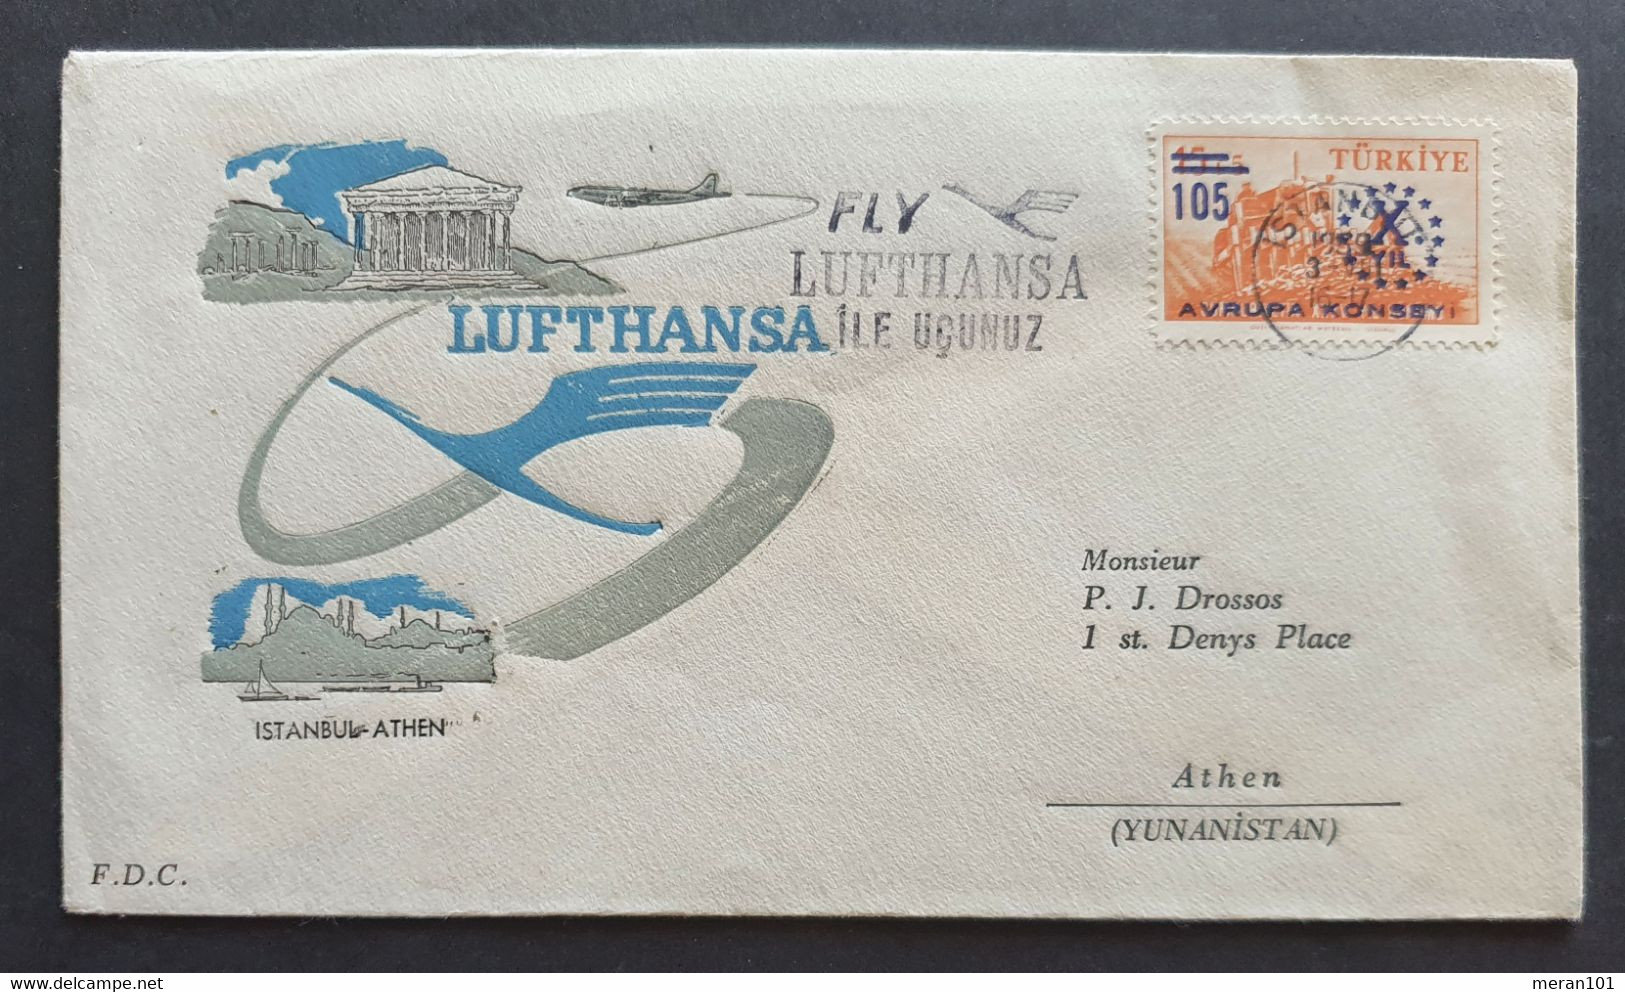 Türkei Eröffnungsflug LUFTHANSA Istanbul - Athen 3.8.1959 - Luftpost